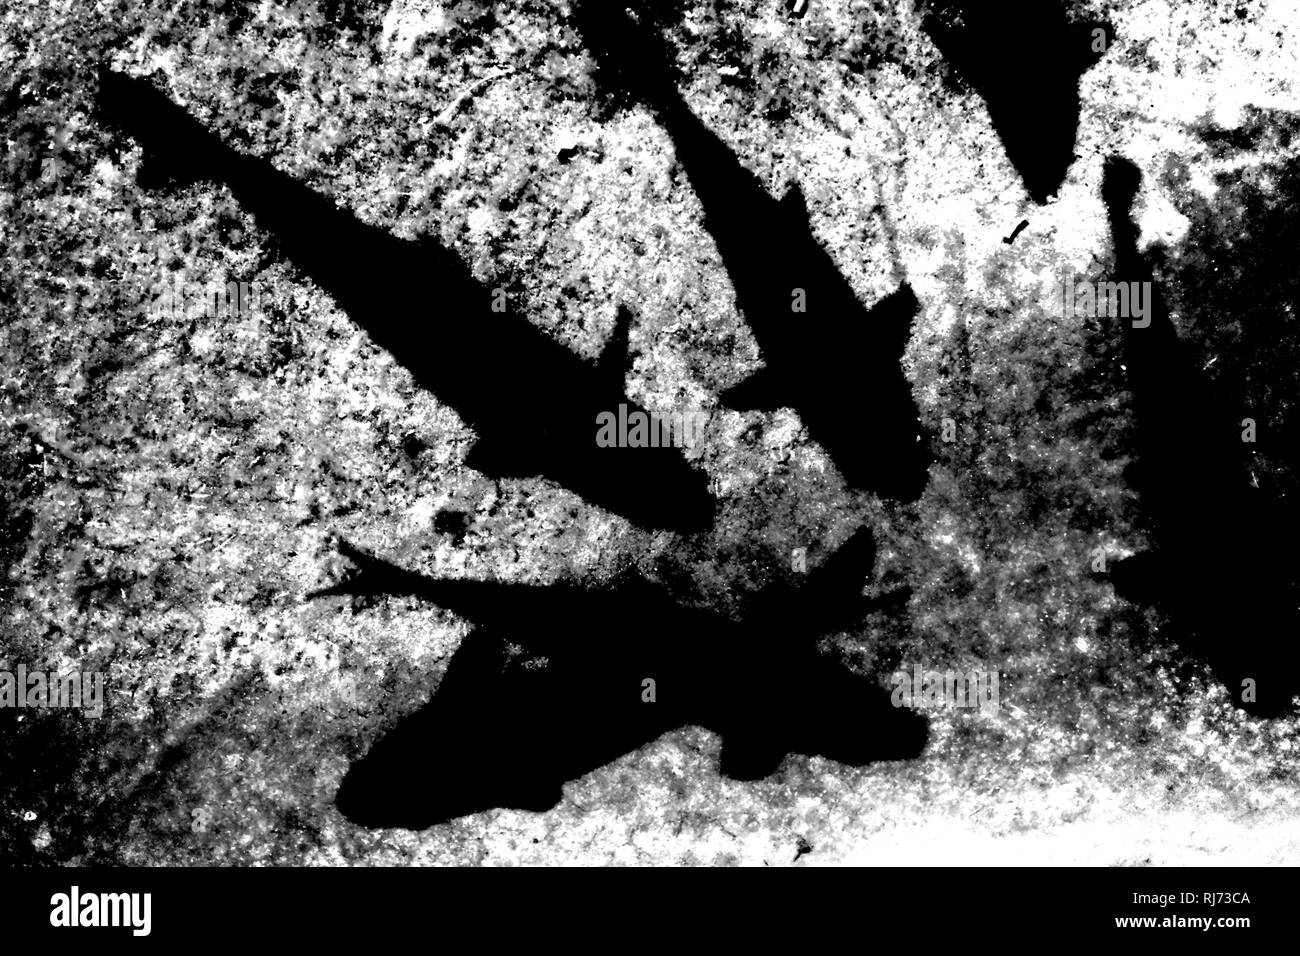 Nahaufnahme von Koikarpfen, die direkt unter der Wasseroberfläche schwimmen einen Schatten werfen, Stock Photo